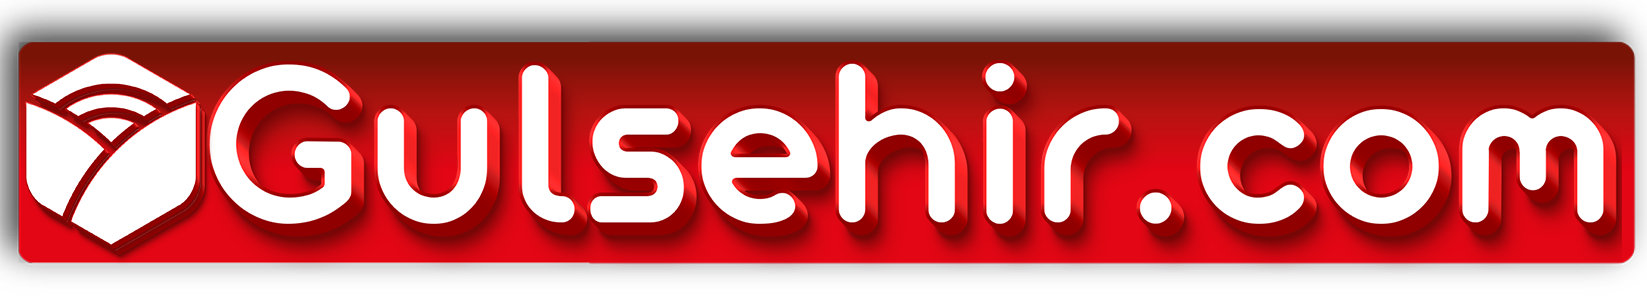 headder_red_logo